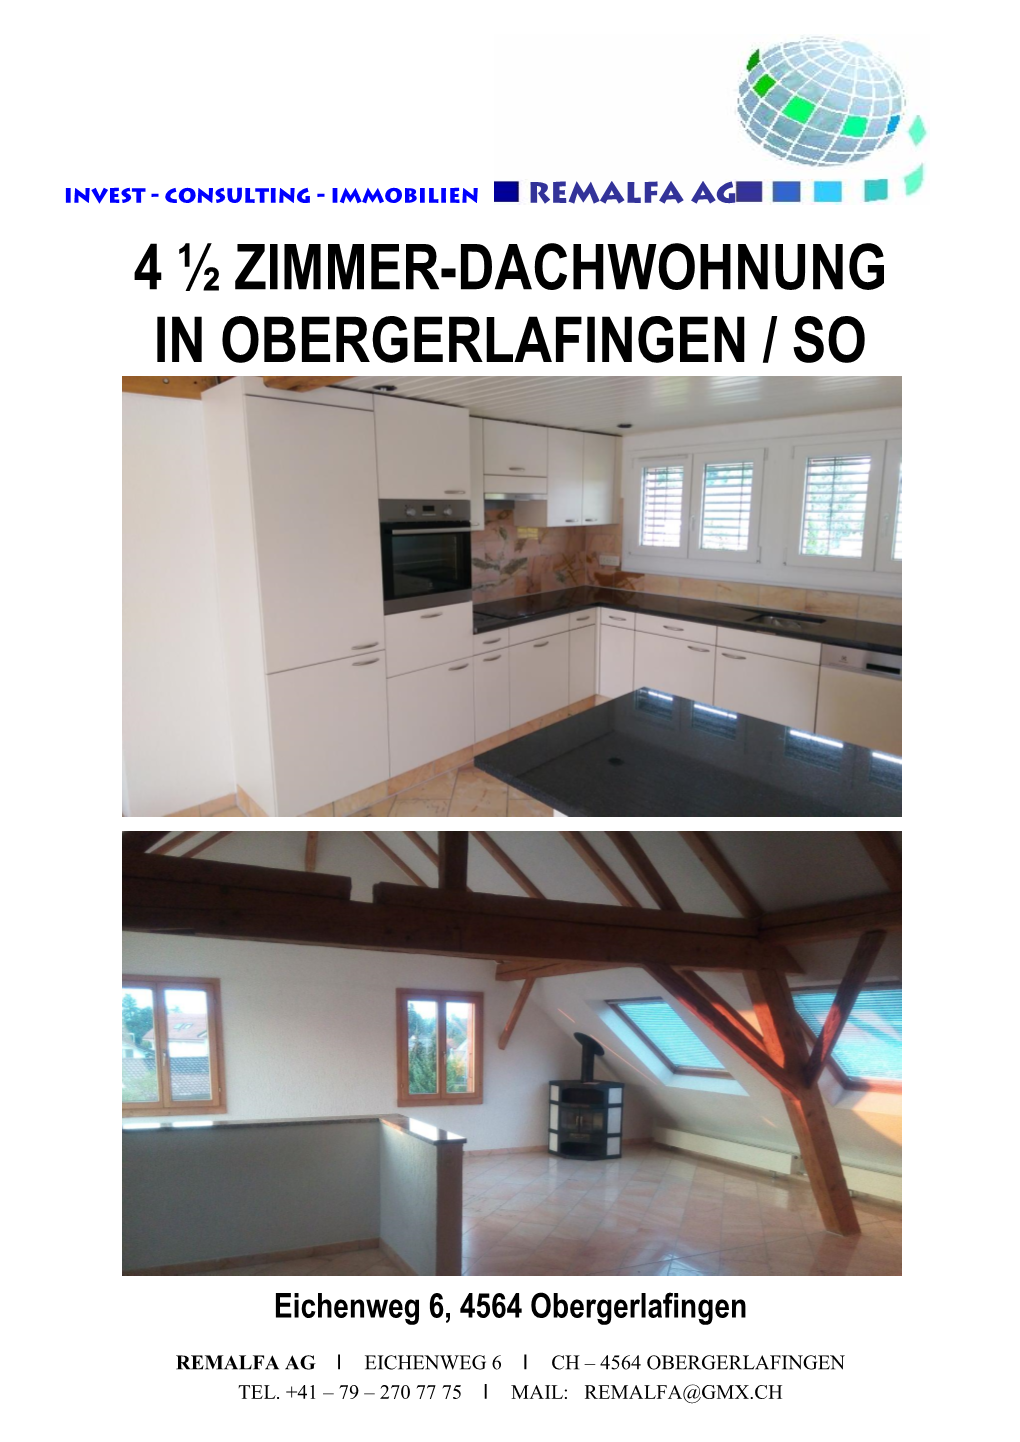 4 ½ Zimmer-Dachwohnung in Obergerlafingen / So